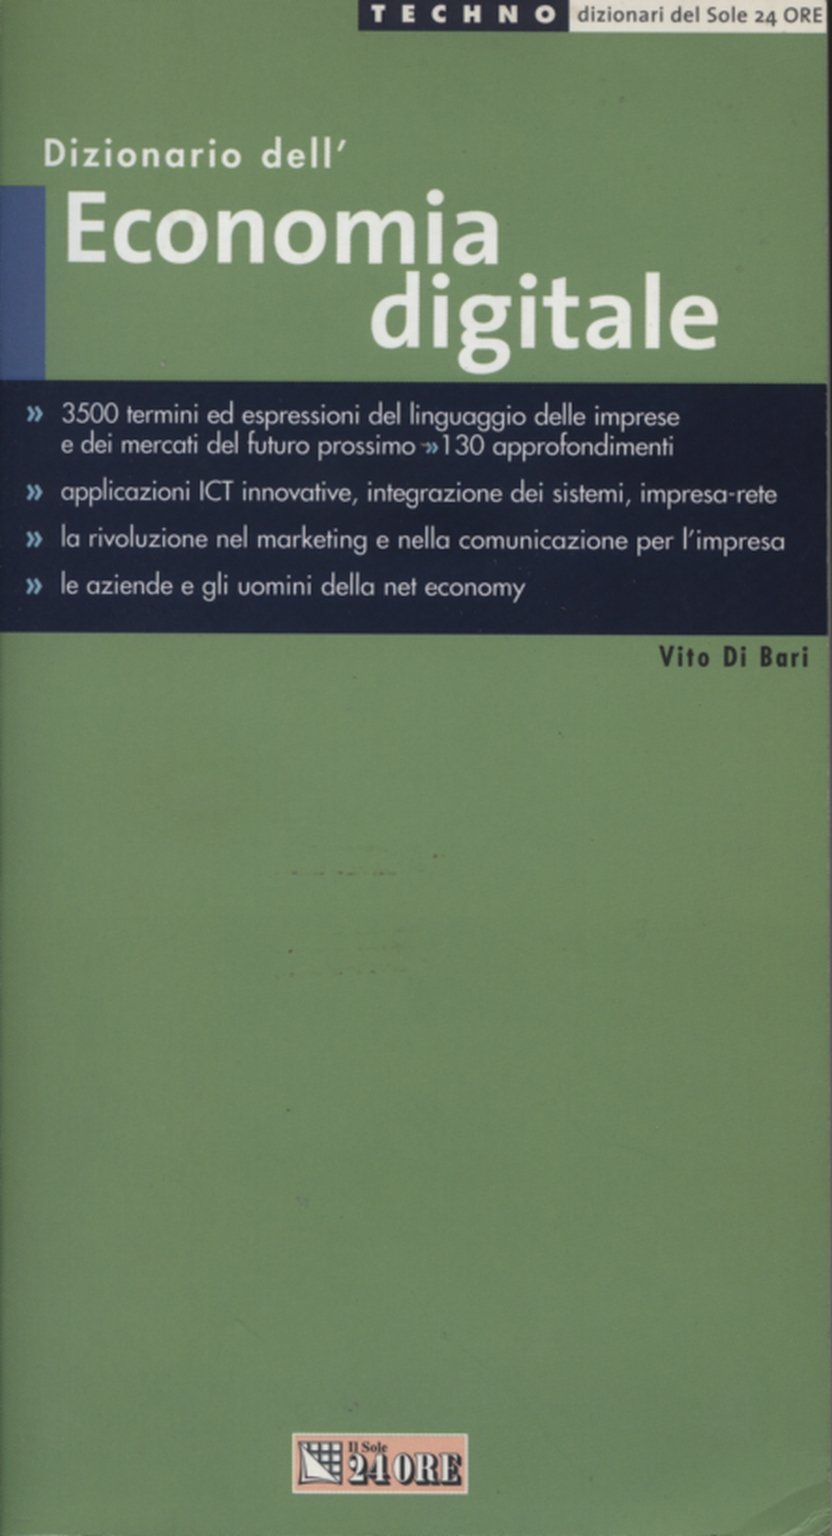 Dizionario dell'Economia Digitale, Vito di Bari